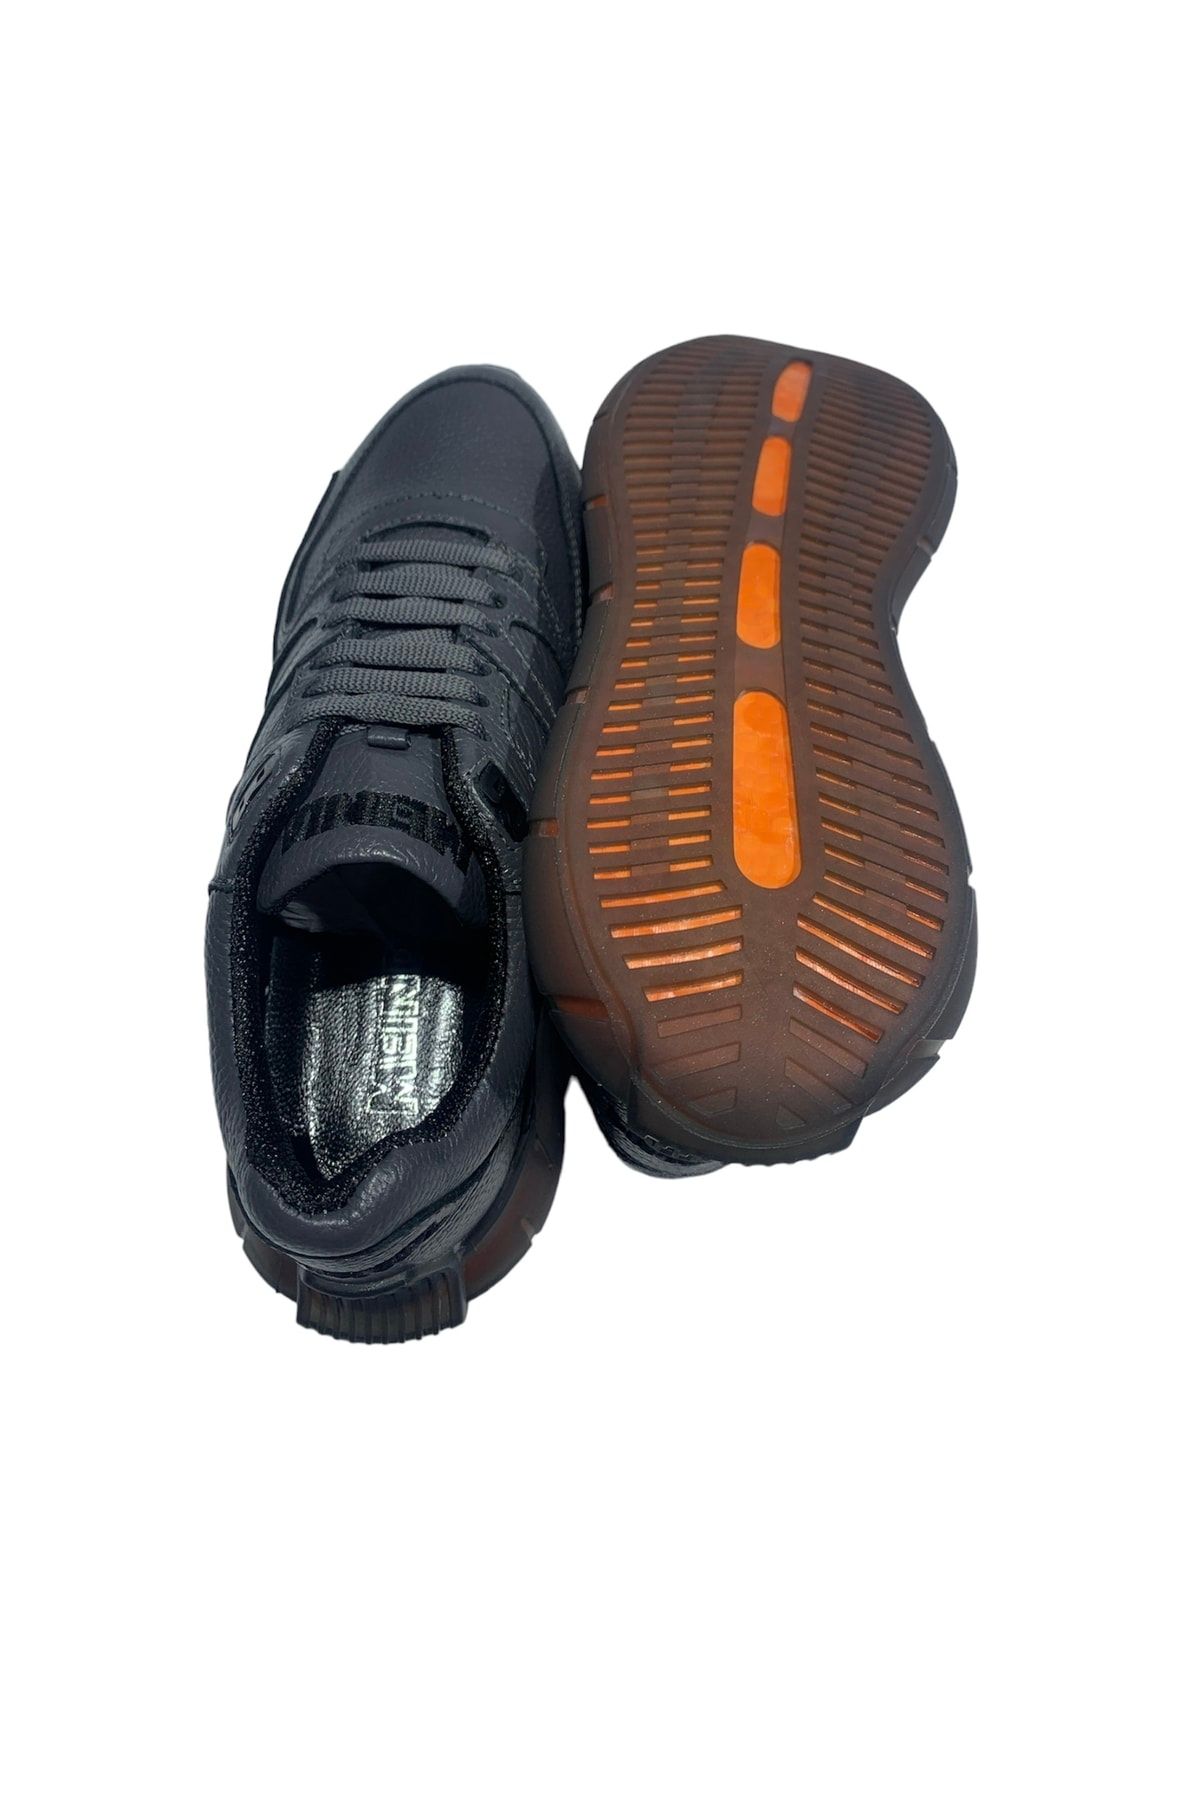 Meindl Boots Taban Erkek Spor Ayakkabı